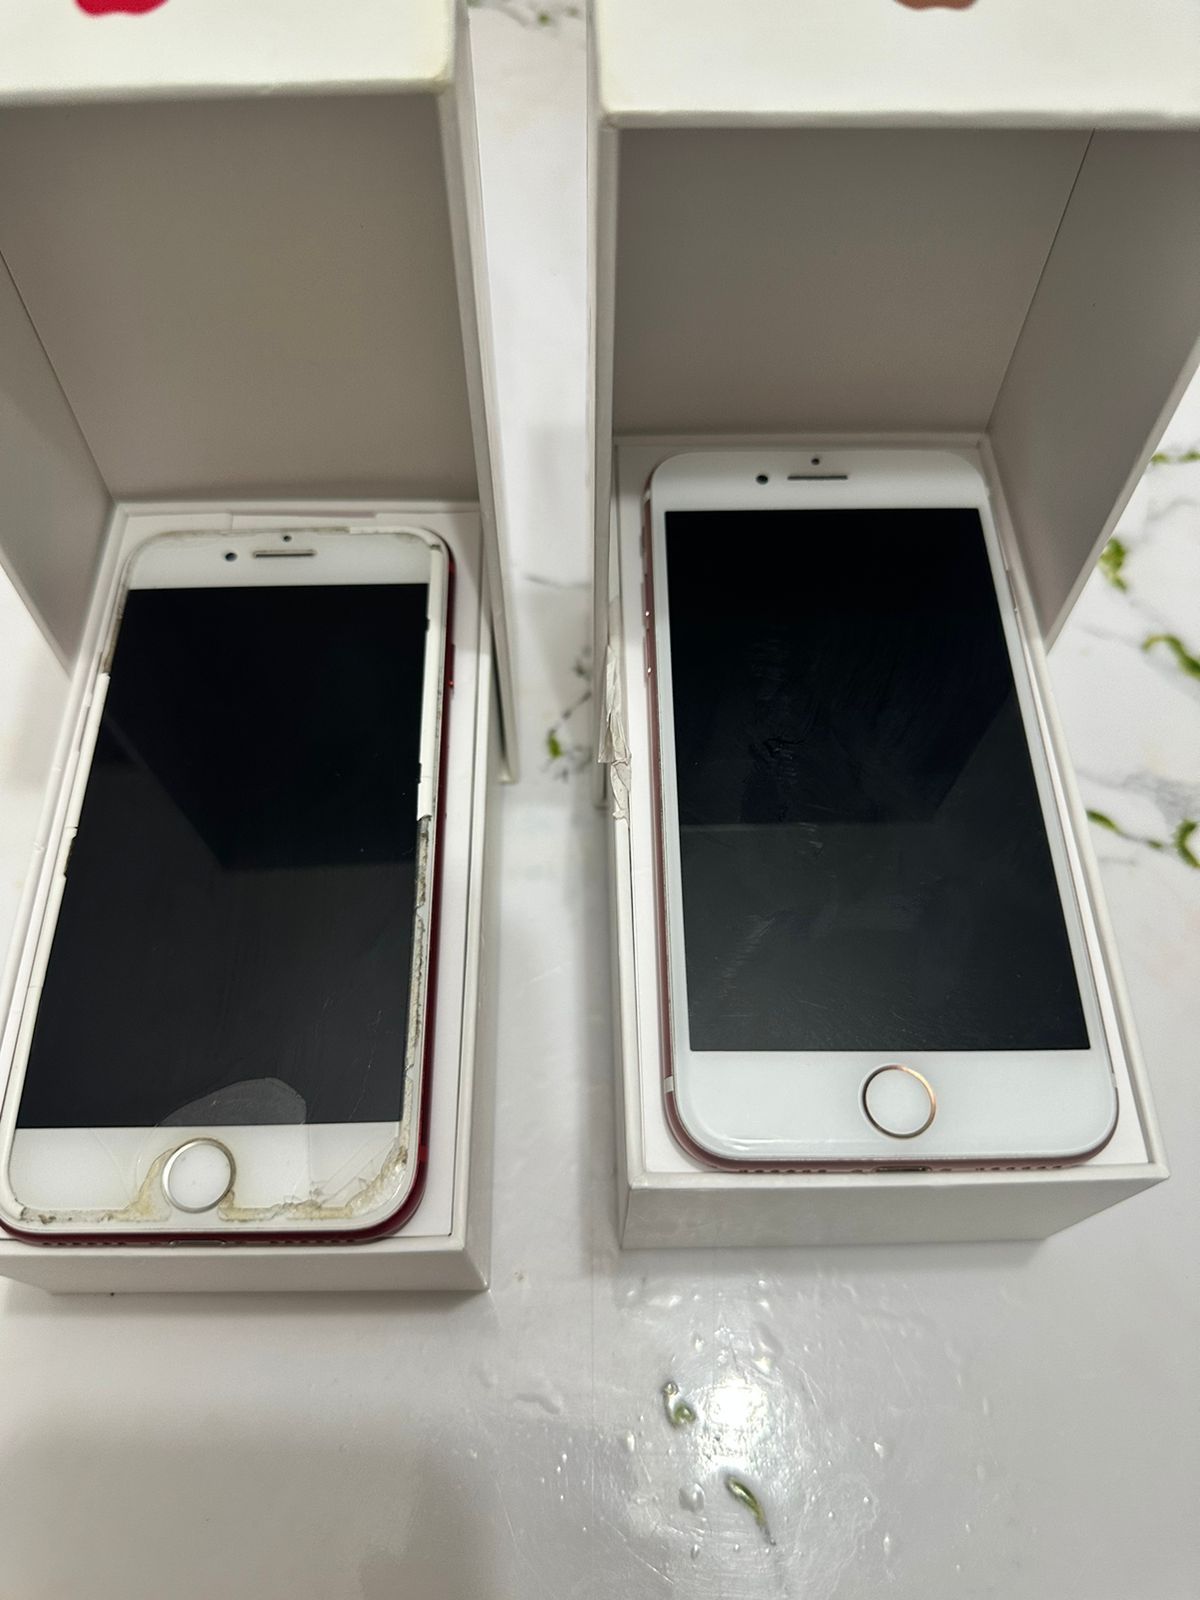 Iphone 7 красный 256гб 74% и 7 розовый 128гб 96%